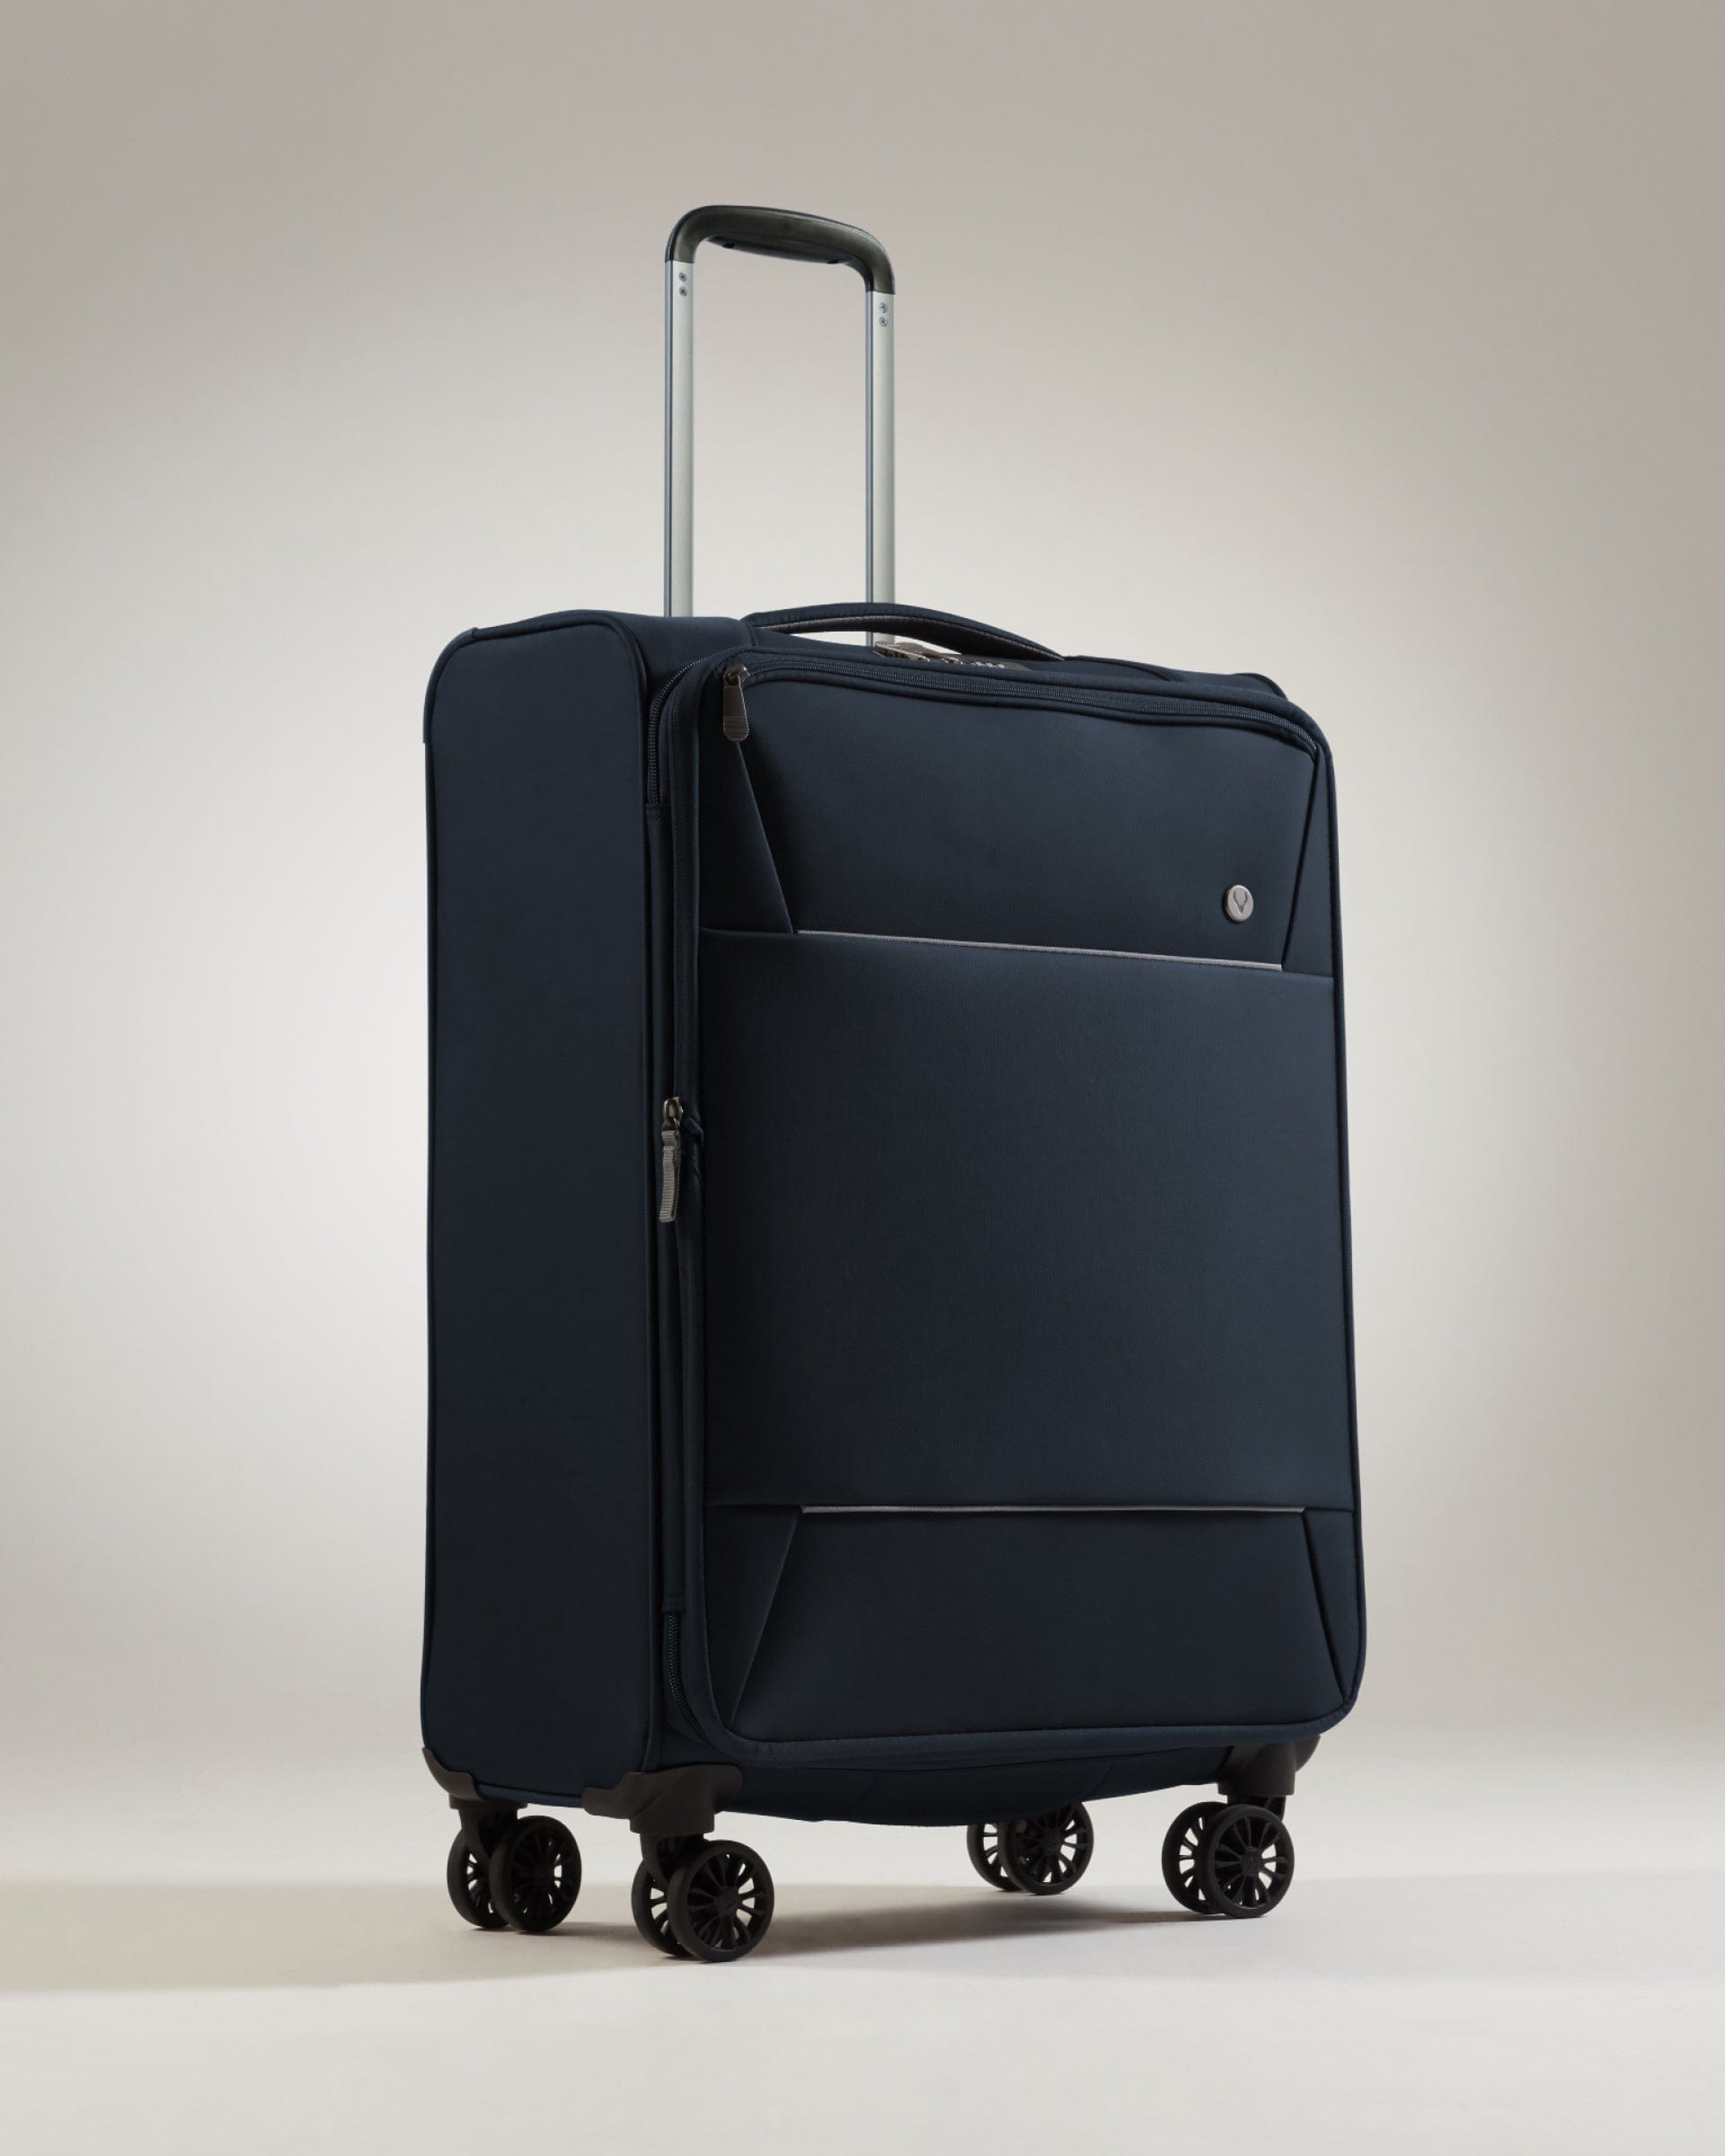 View Antler Brixham Medium Suitcase In Navy Size 28cm x 435cm x 71cm information